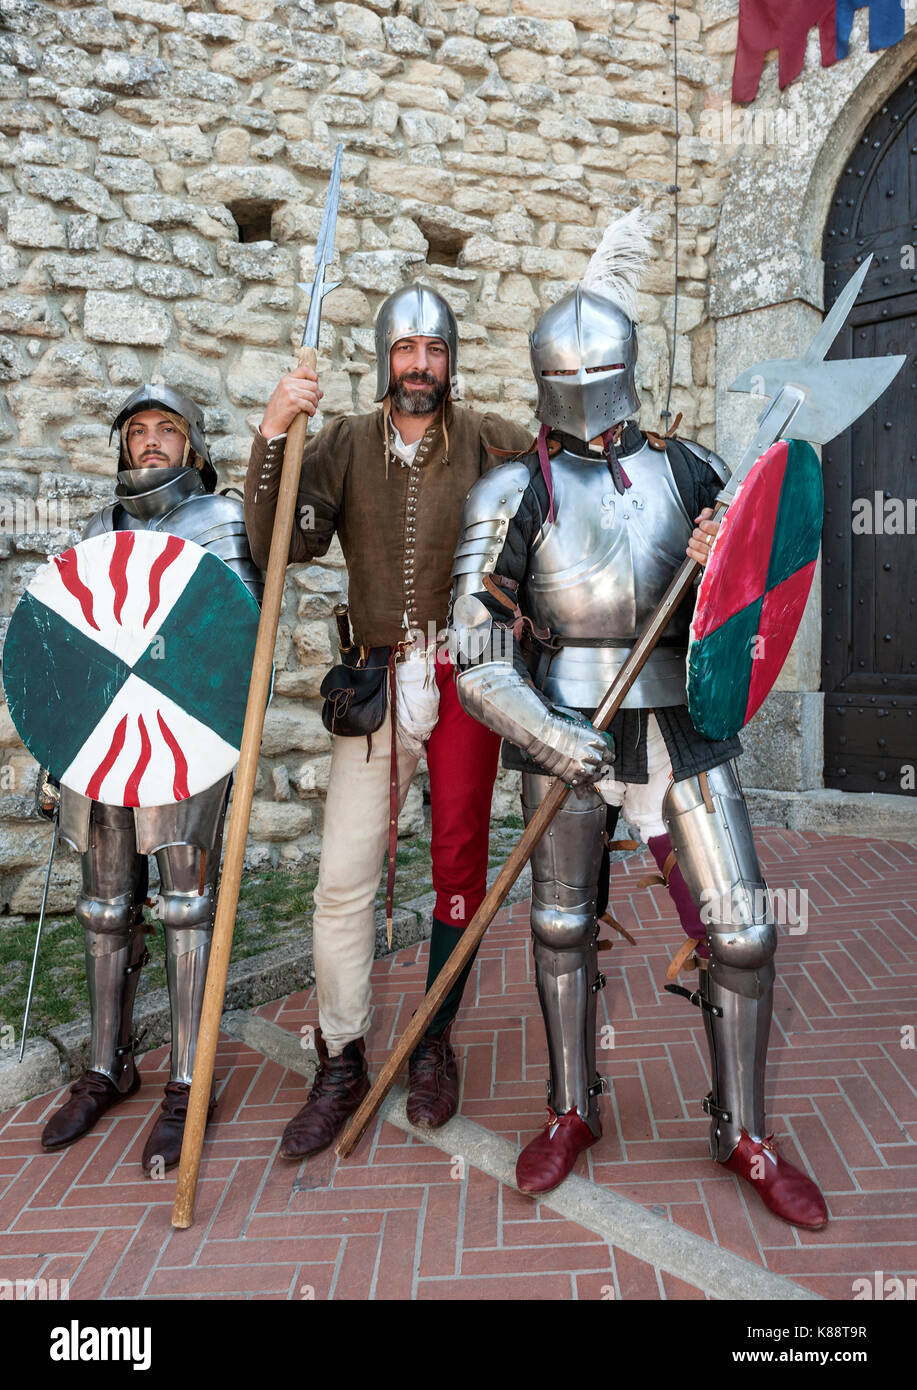 Marinis San habillés et d'effectuer en costumes pendant le Festival Médiéval annuel tenu à San Marino. Banque D'Images